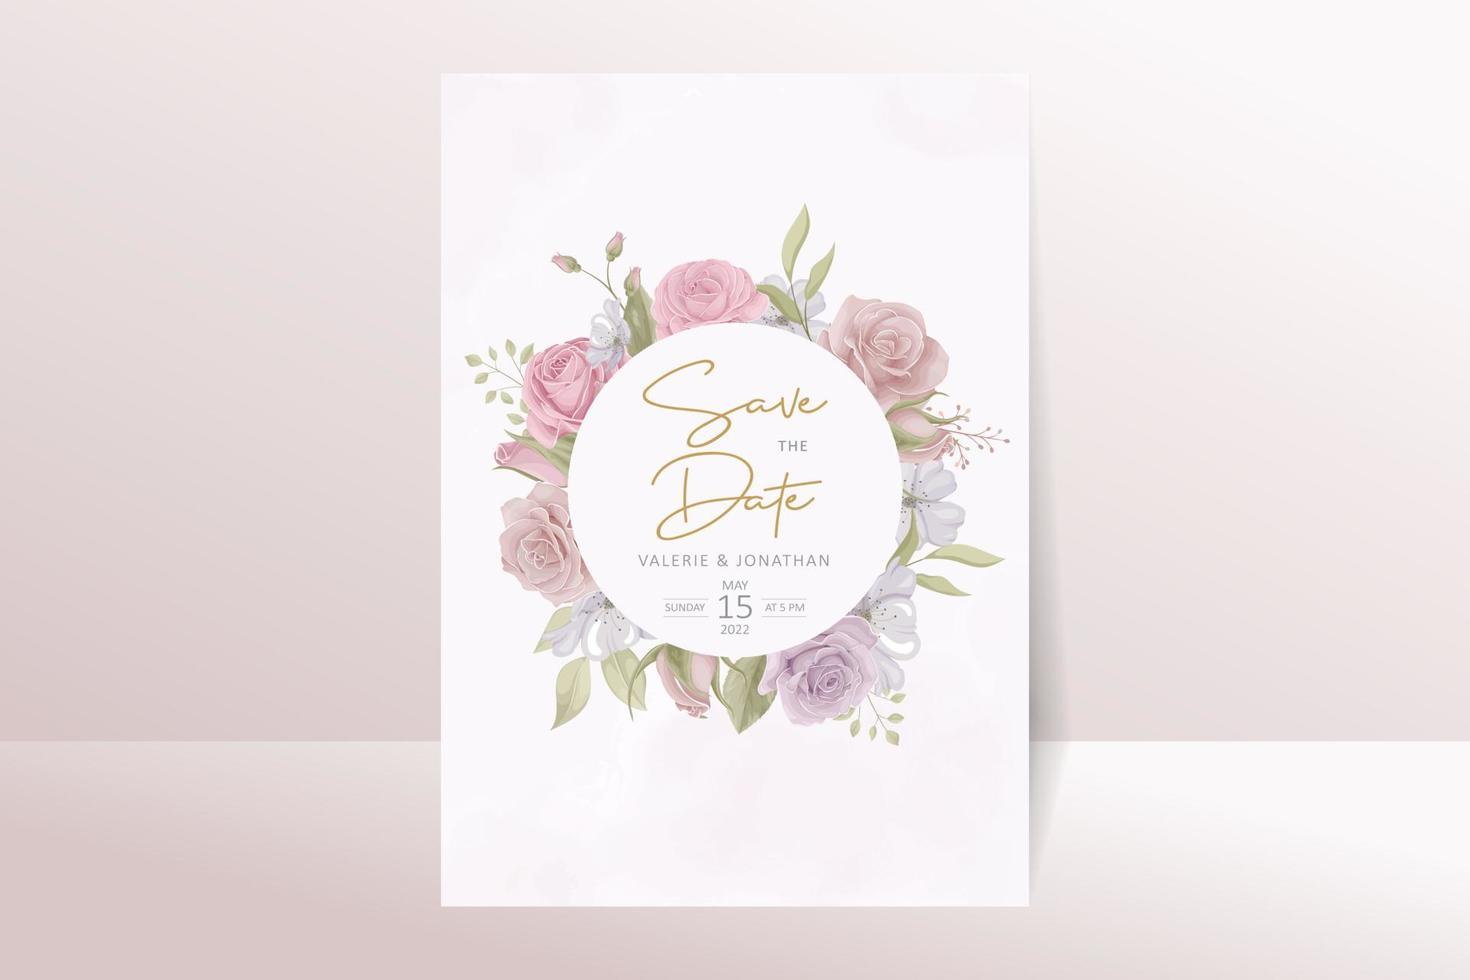 modelo de convite de casamento com design de flor rosa vetor